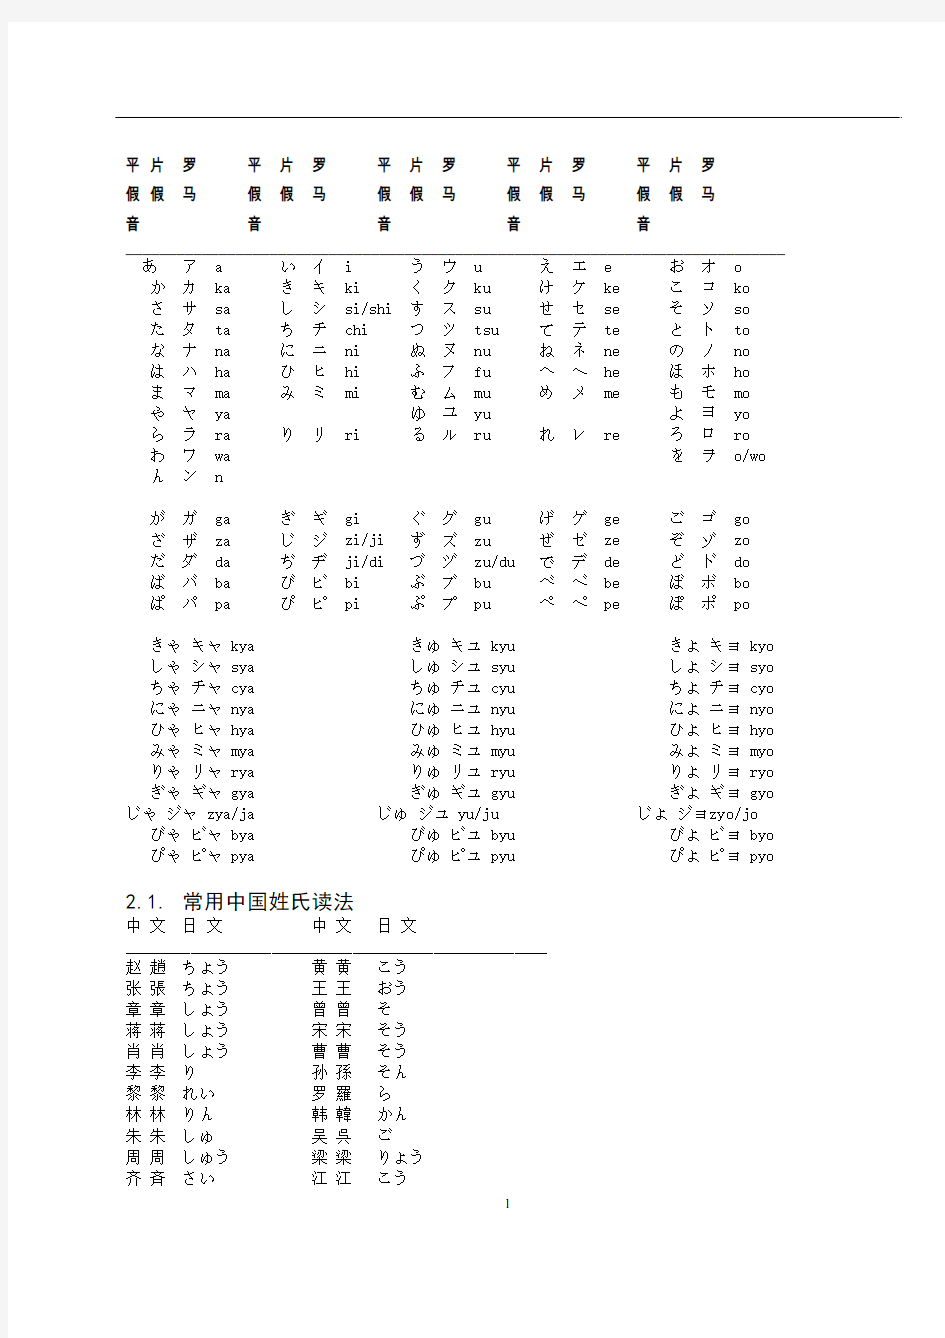 日语课堂笔记(完整版)